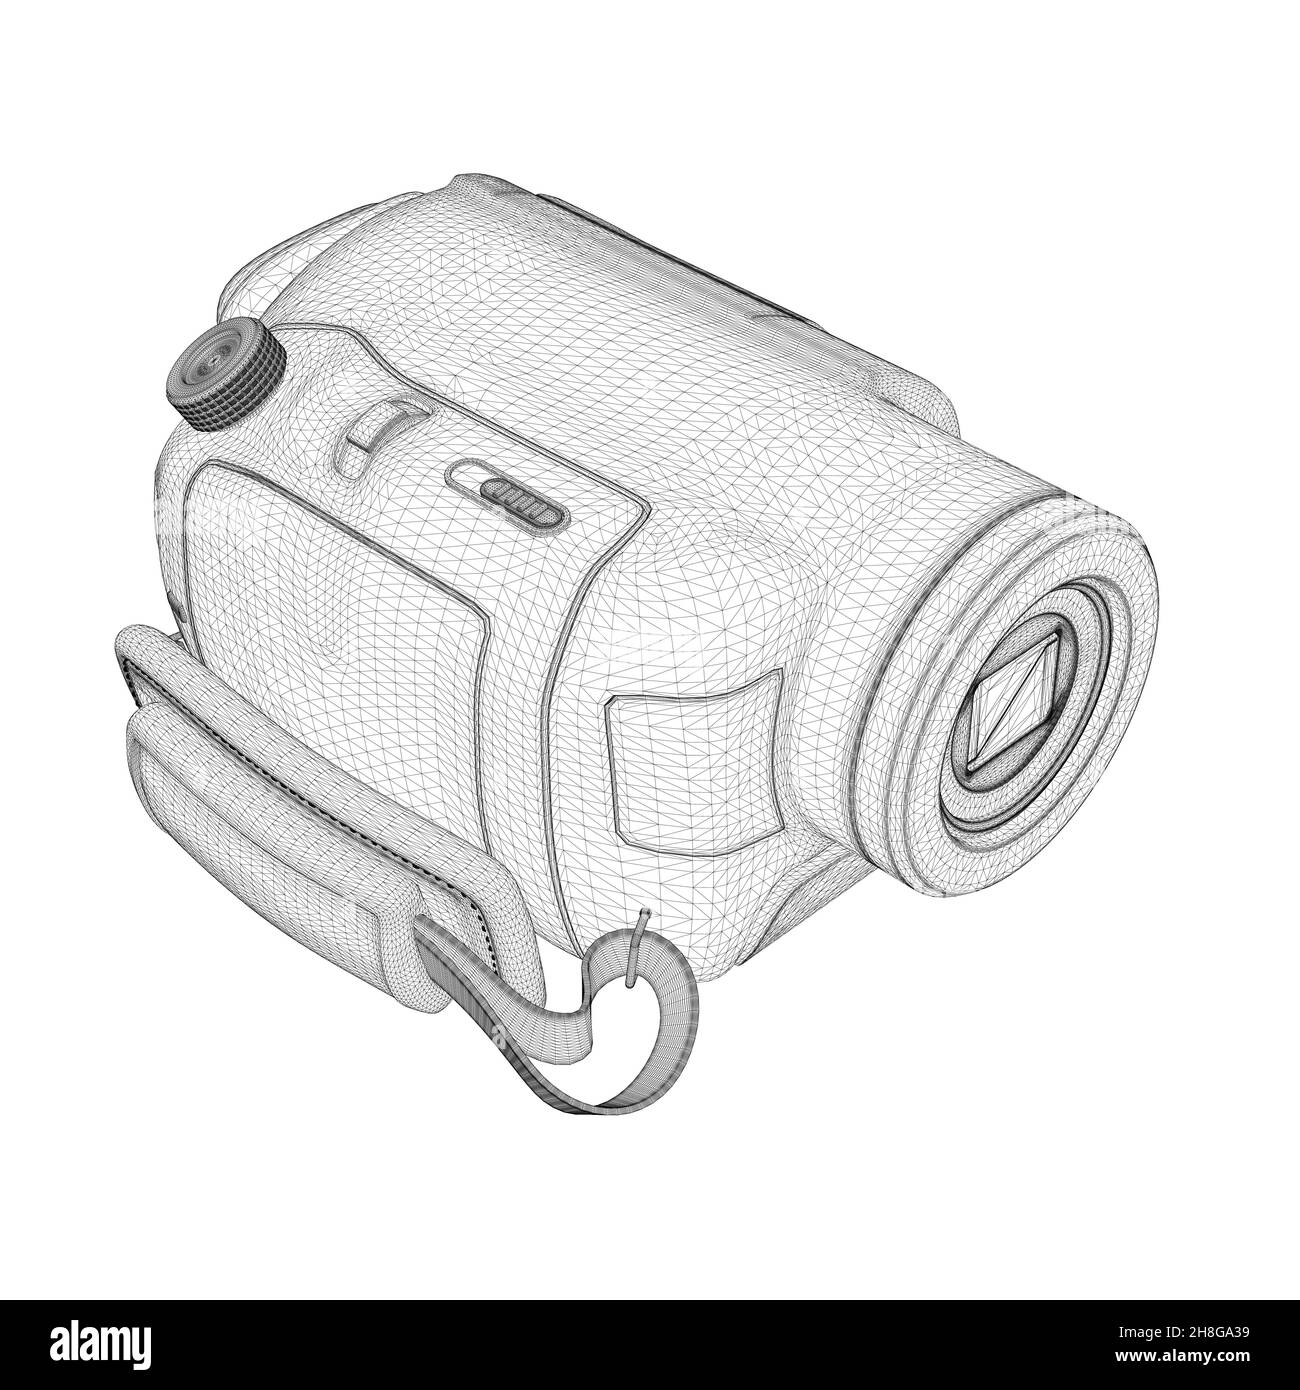 Cadre métallique de la caméra vidéo domestique manuelle à partir de lignes noires isolées sur fond blanc.Caméra vidéo numérique rétro.Vue isométrique.3D.Vecteur illustrat Illustration de Vecteur